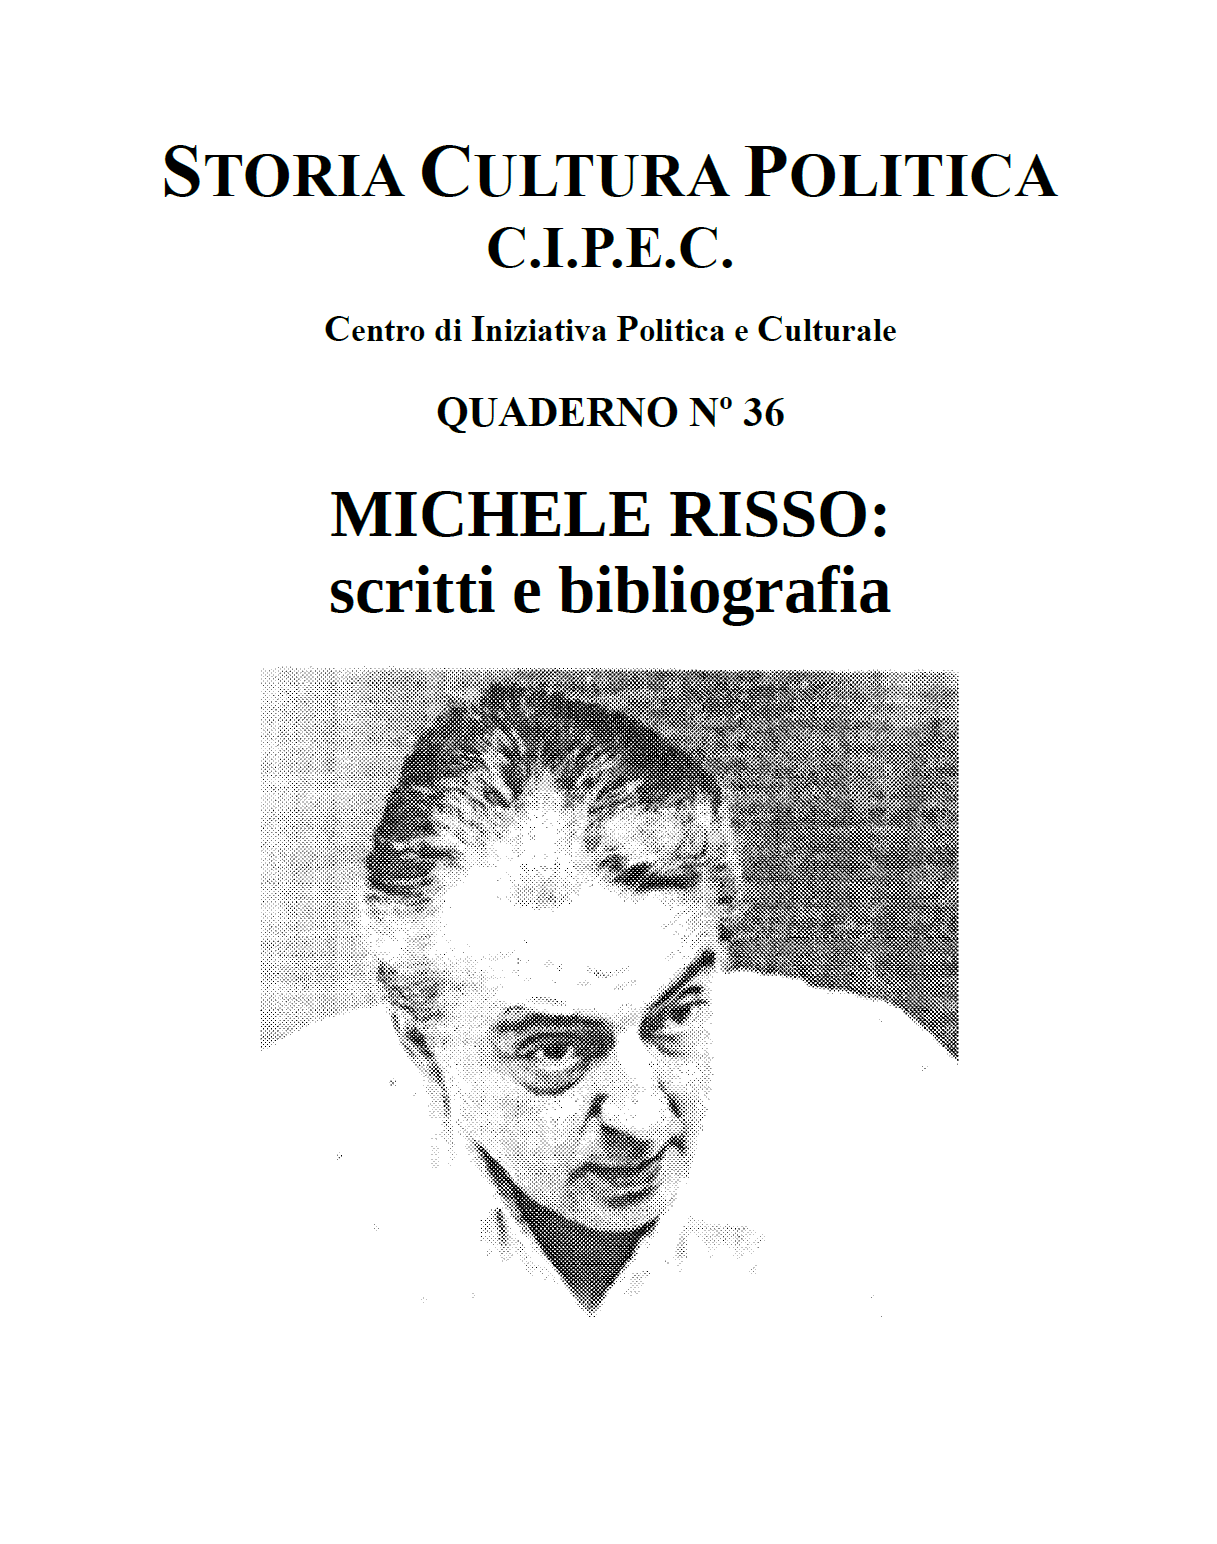 Michele Risso Scritti bibliografia, Quaderno CIPEC 36